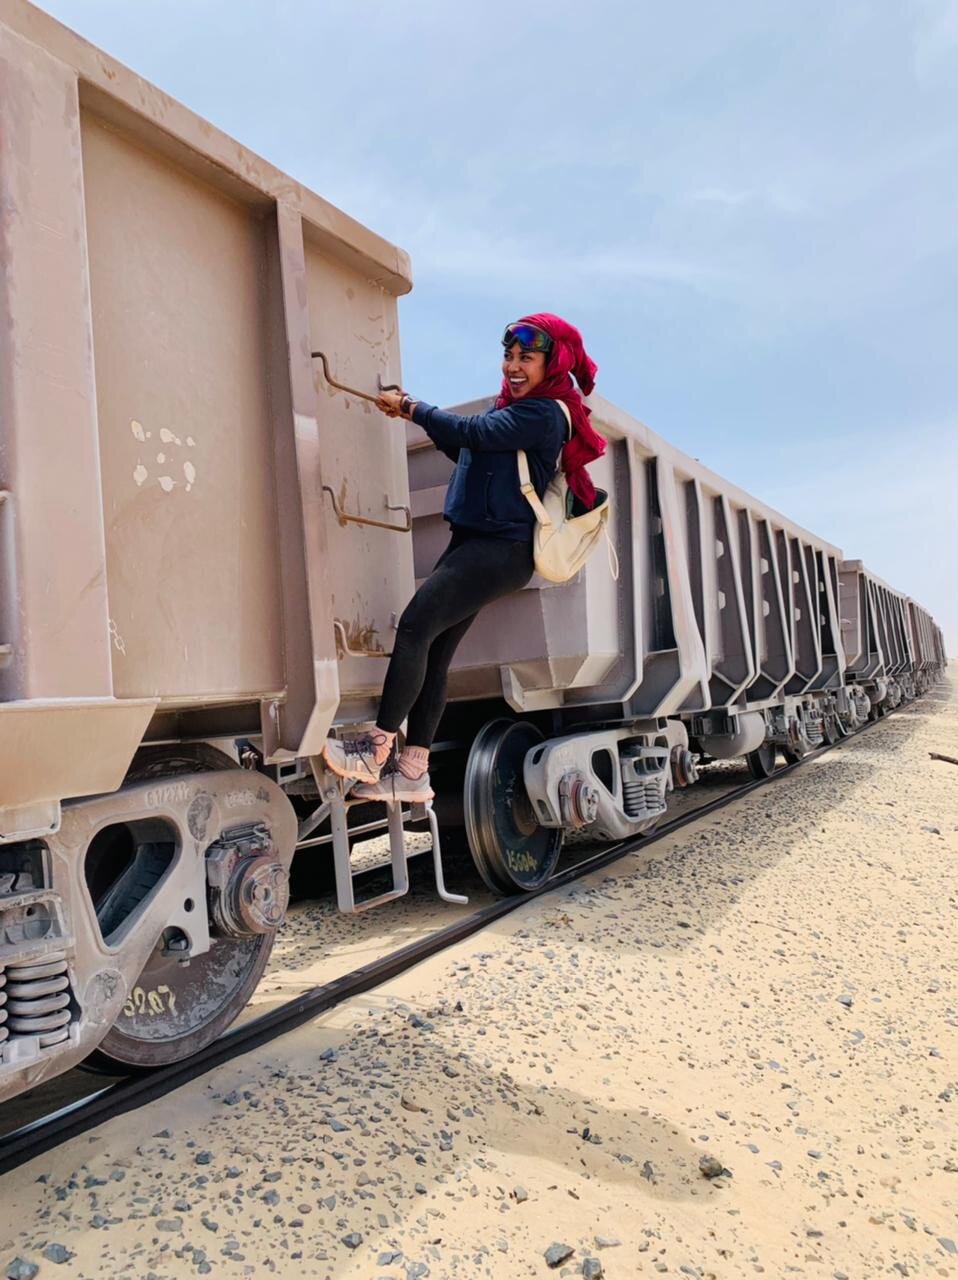 Kach在2021年乘坐世界上最长的货运列车“铁矿石列车”独自旅行